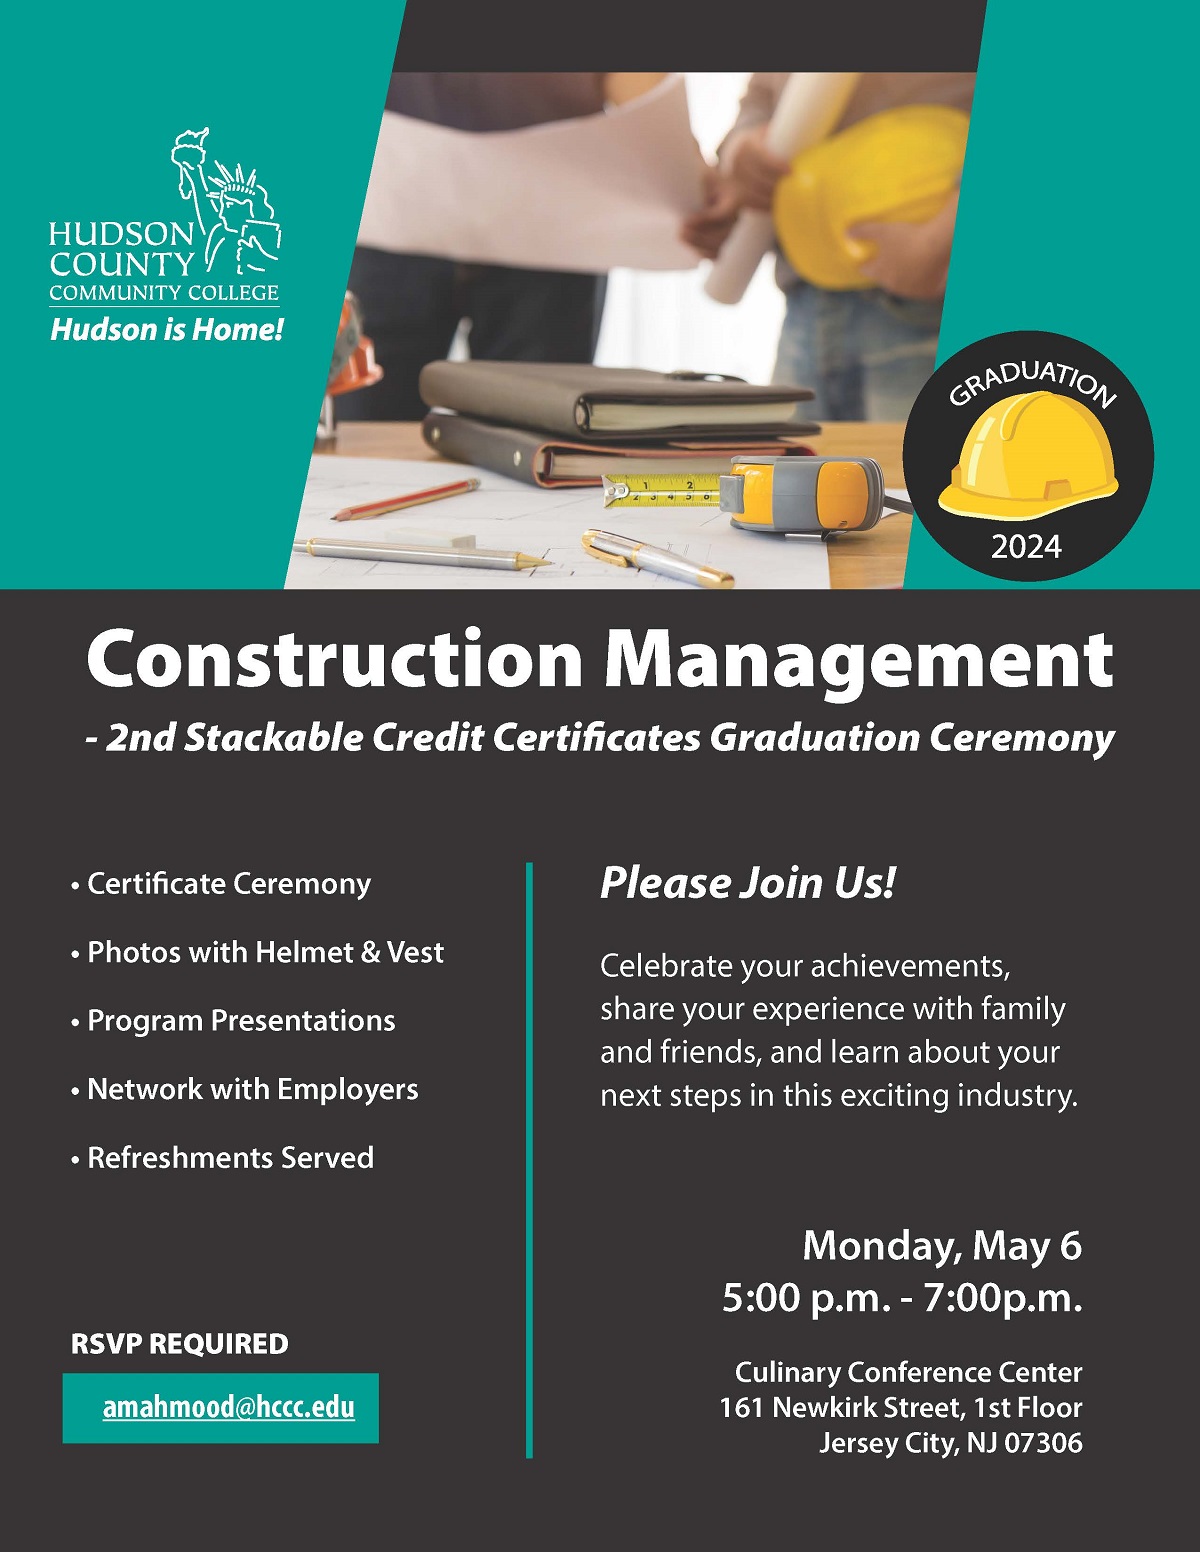 Construction Management Graduation Ceremony